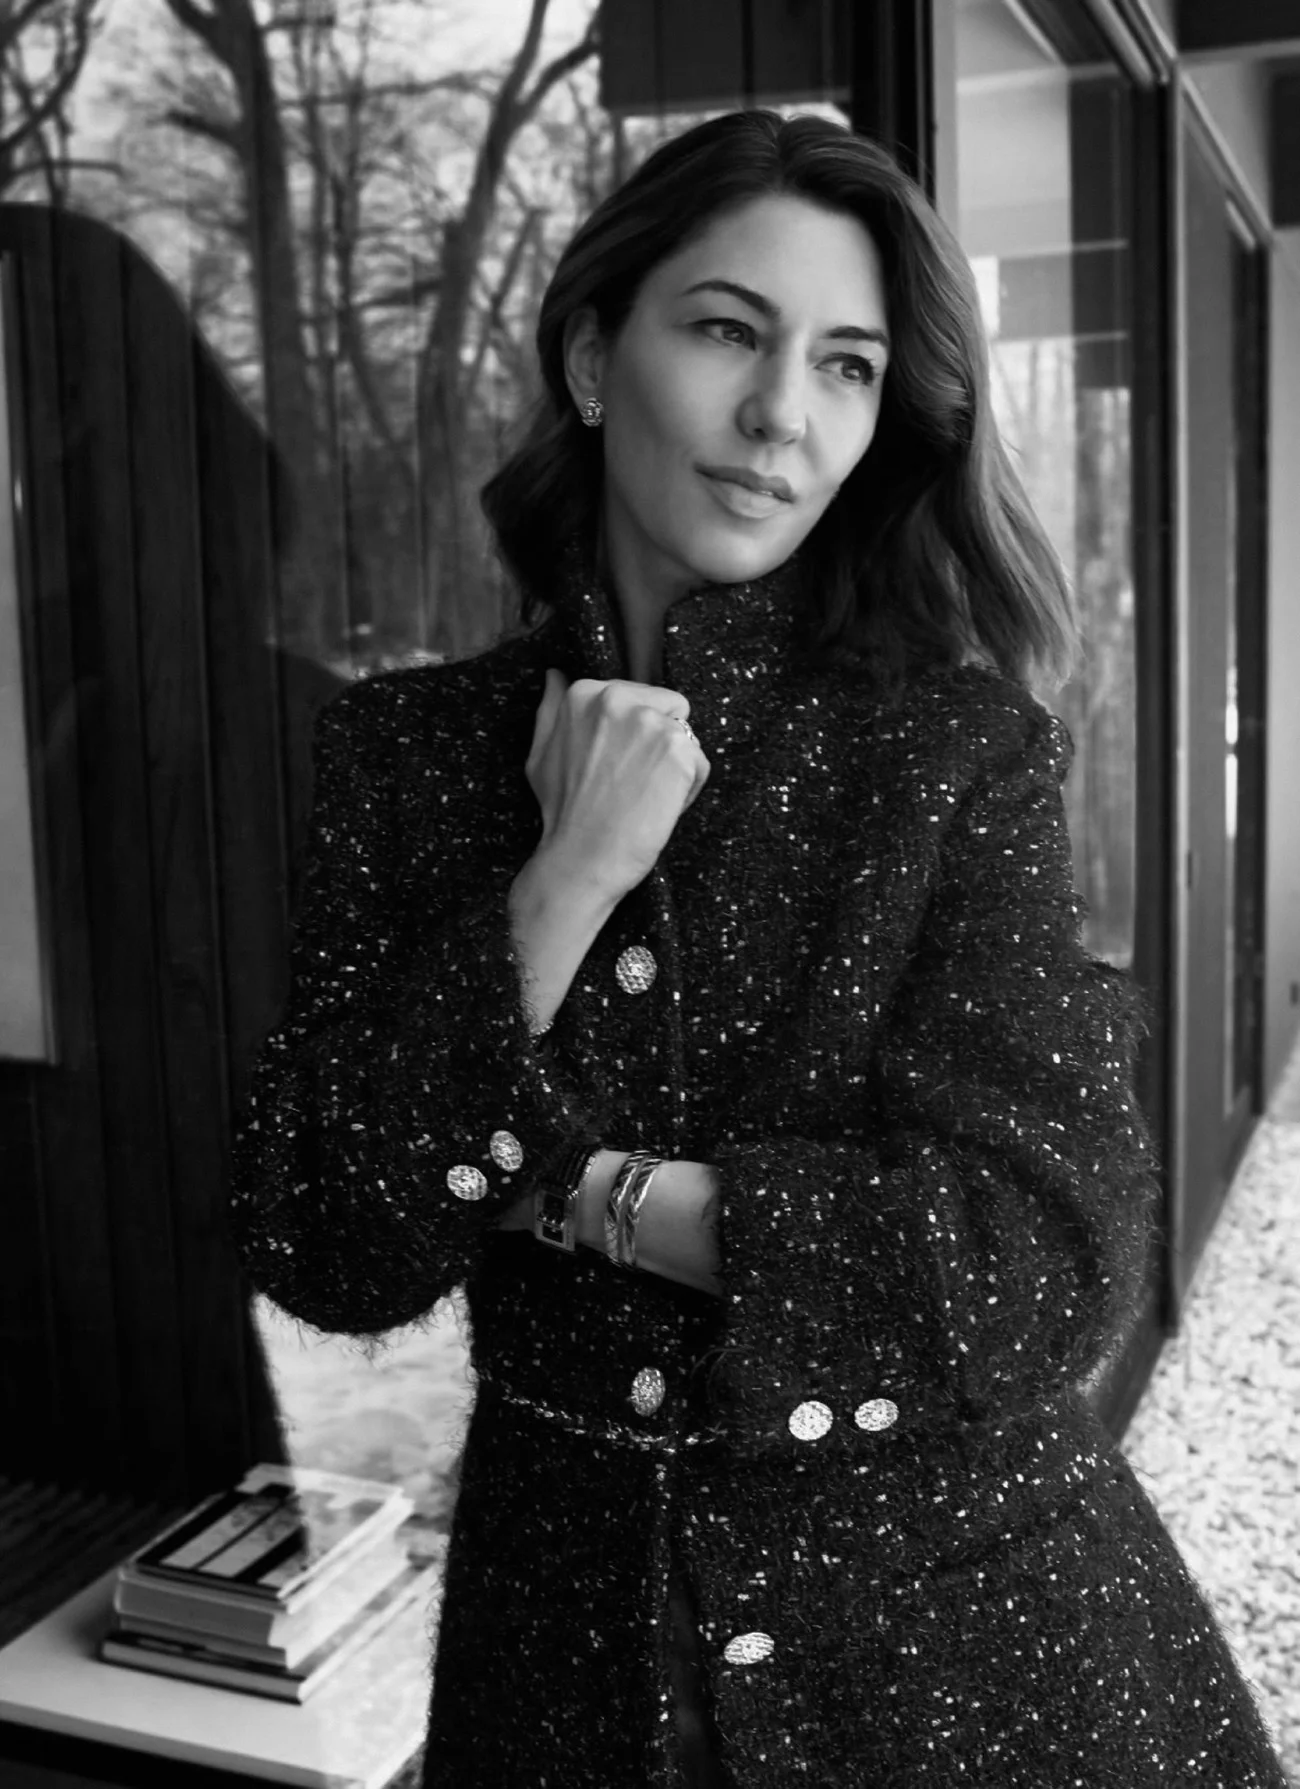 Sofia Coppola in the latest Louis Vuitton campaign, British Vogue